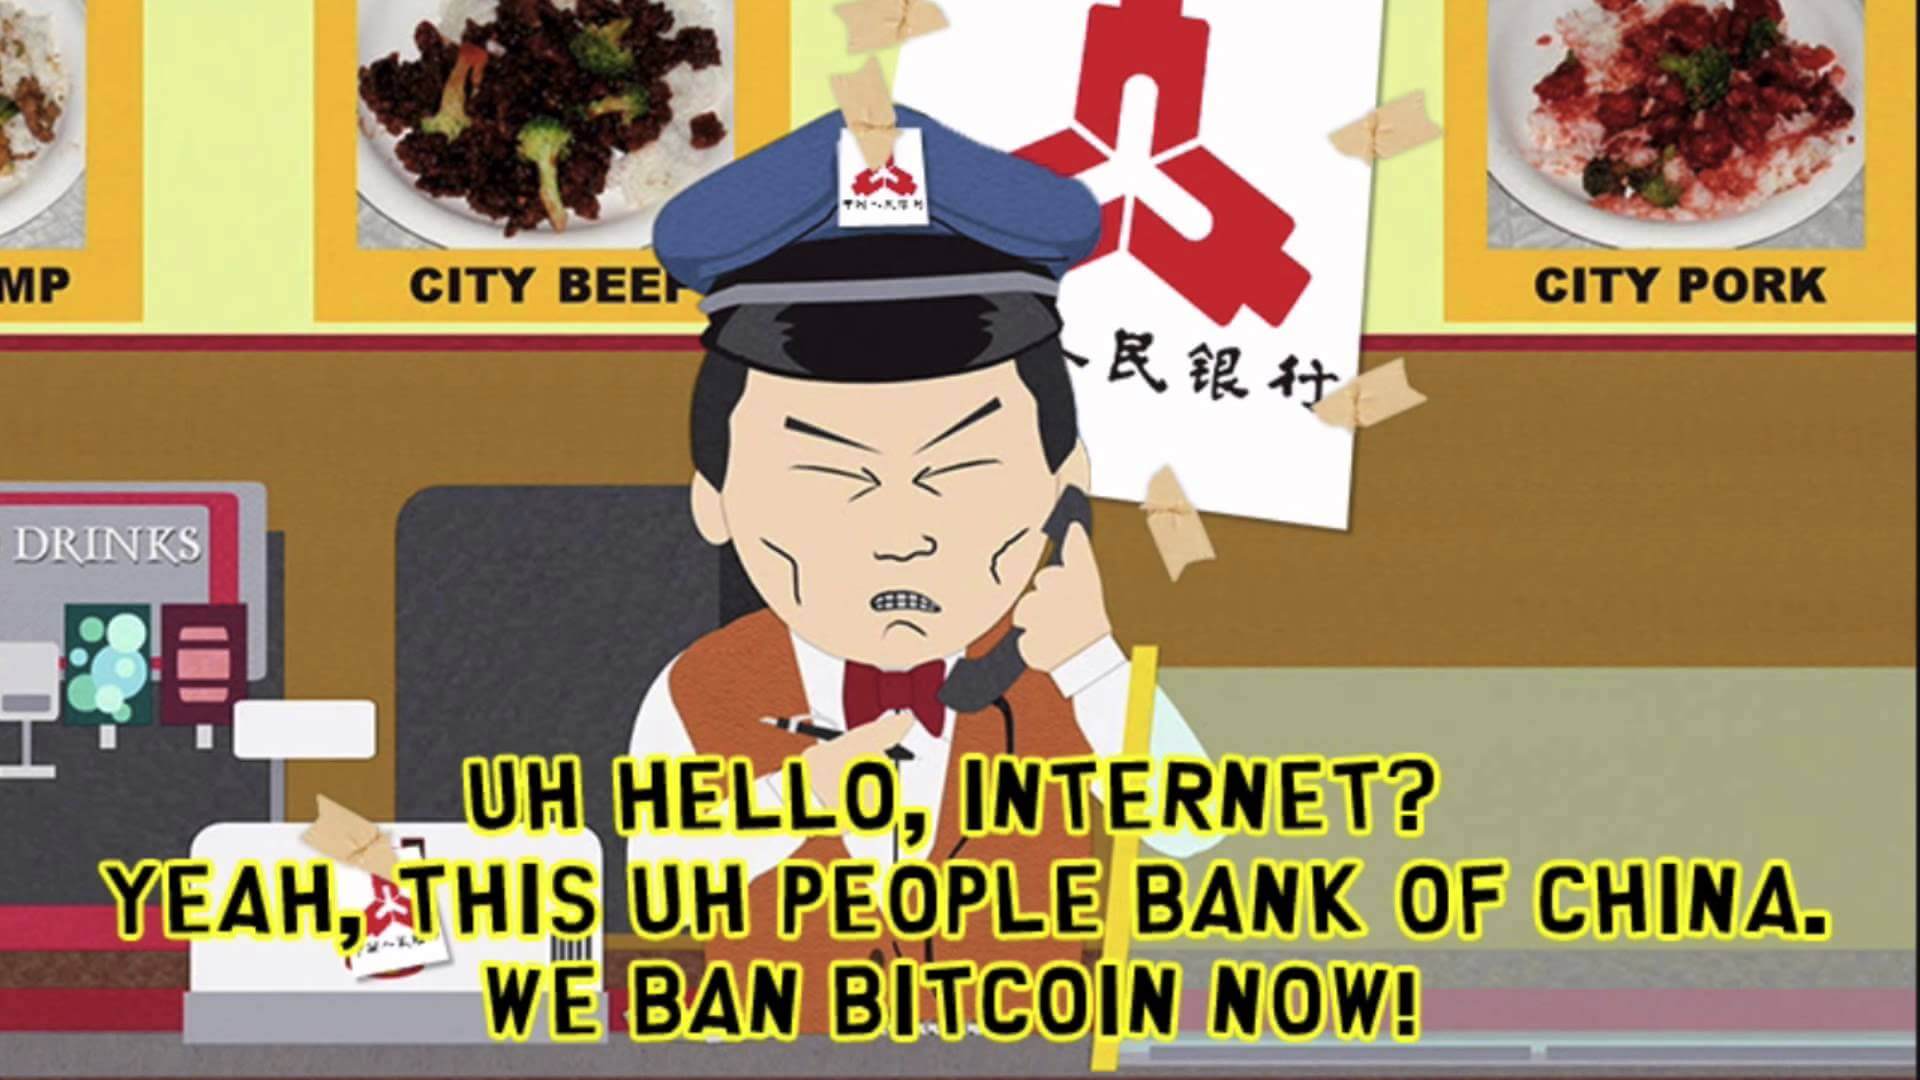 Какое это имеет отношению к Биткоину? Шутка о запрете Биткоина в Китае. Источник: Reddit. Фото.